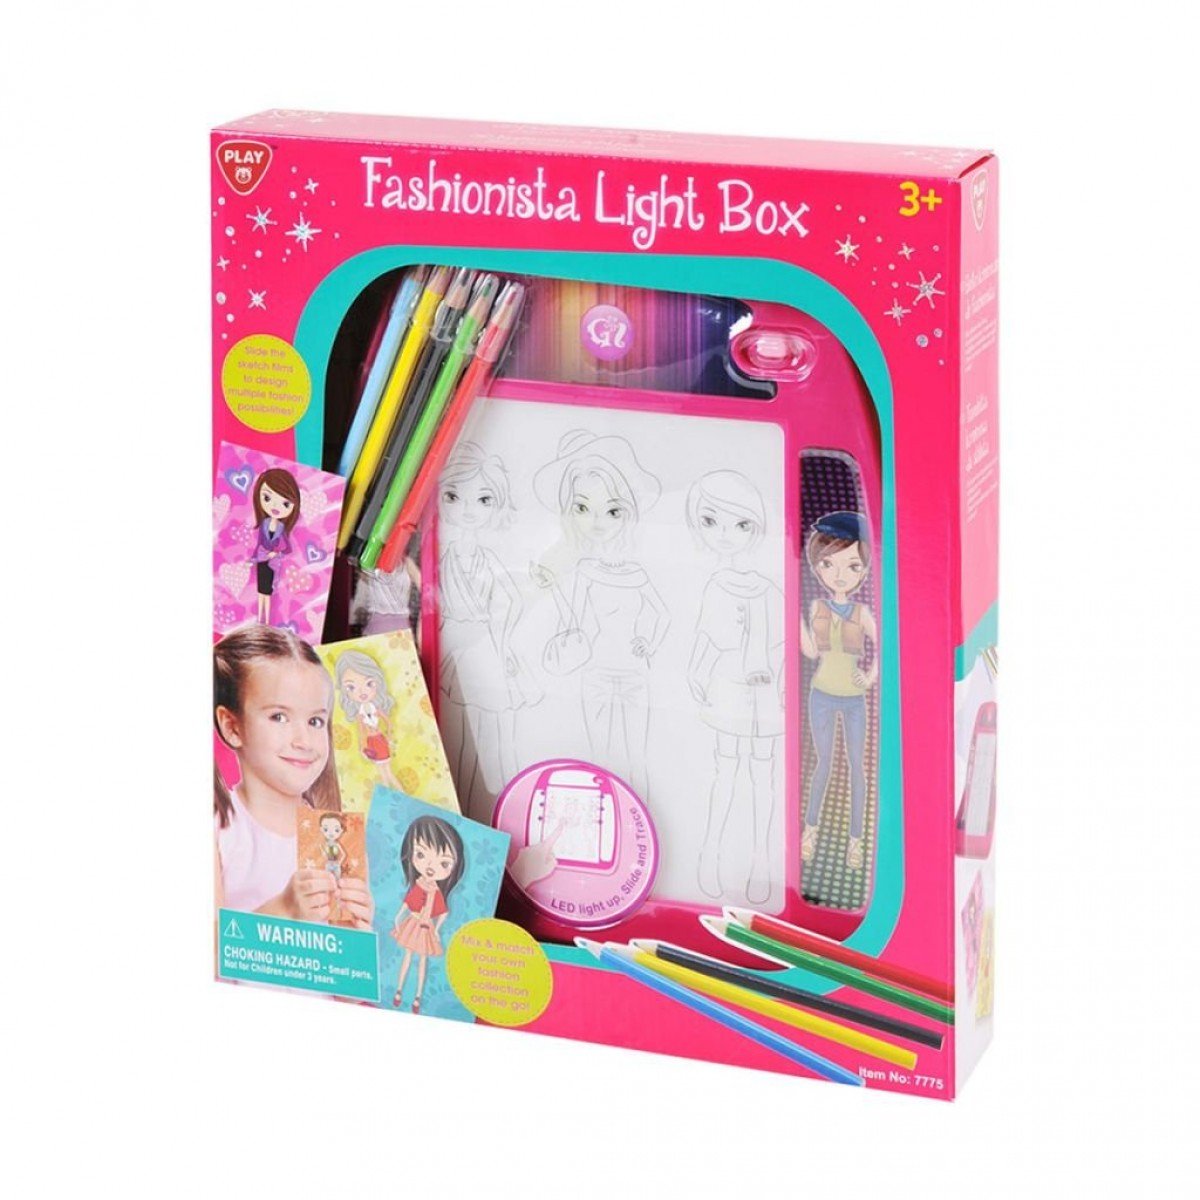 บอร์ดวาดภาพแฟชั่นไฟ LED Fashionista Light Box  (รุ่น 7775) ยี่ห้อ PLAYGO